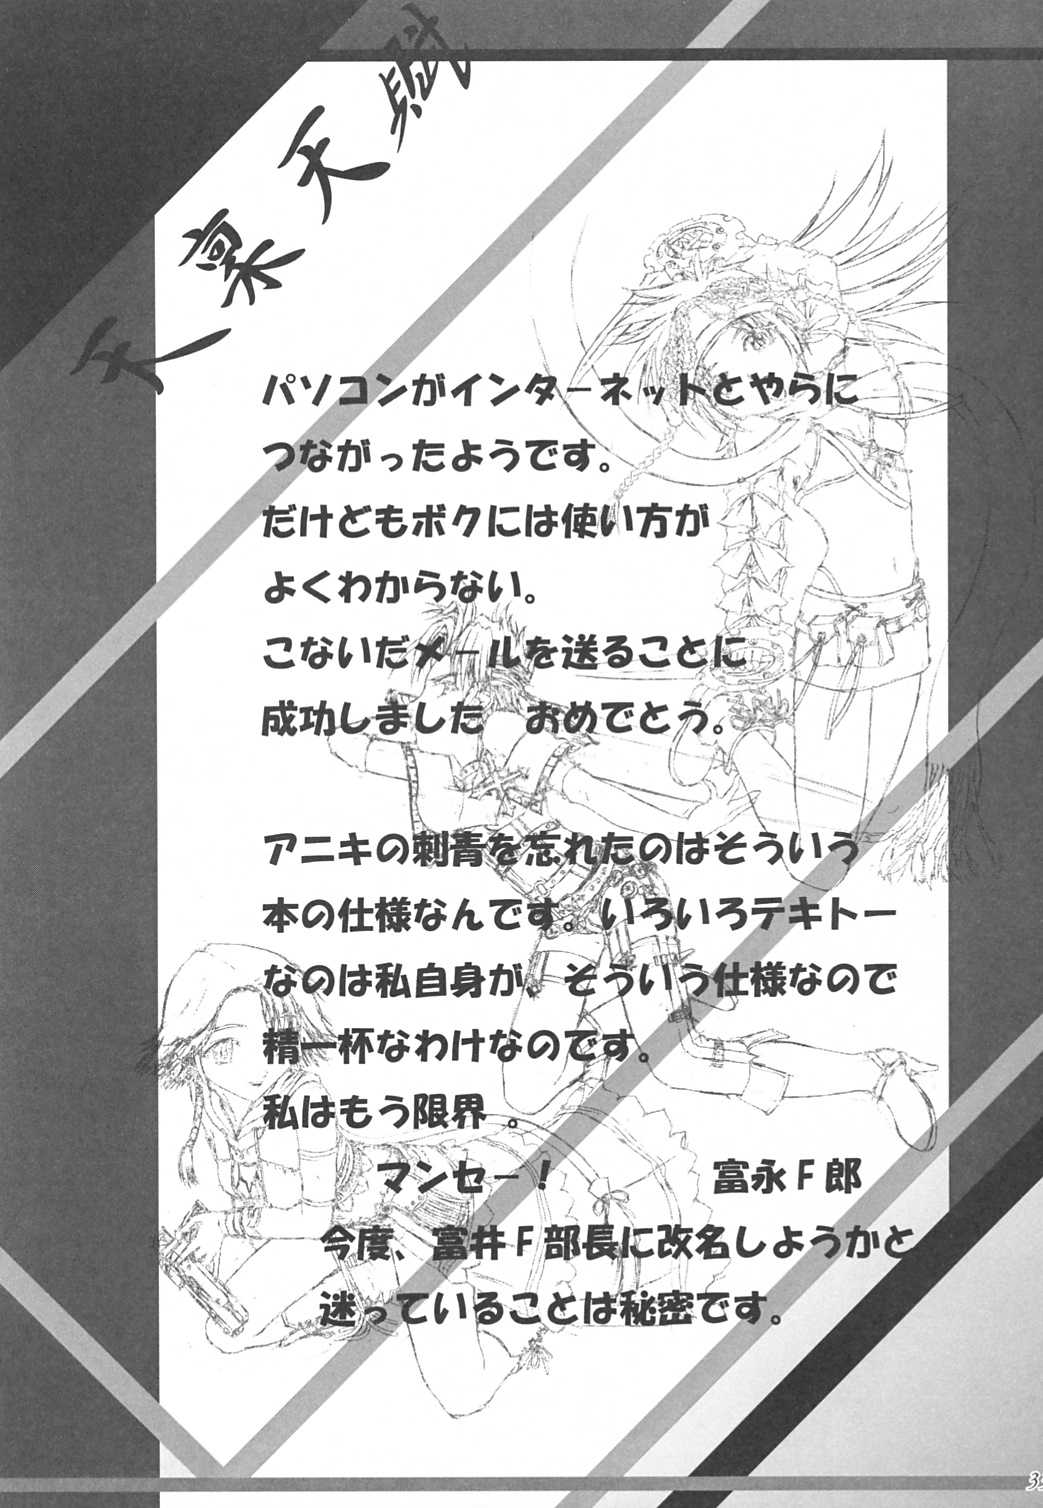 (C64) [フリーダム☆トミーR (富井F朗)] 天稟天賦 (ファイナルファンタジーX-2)